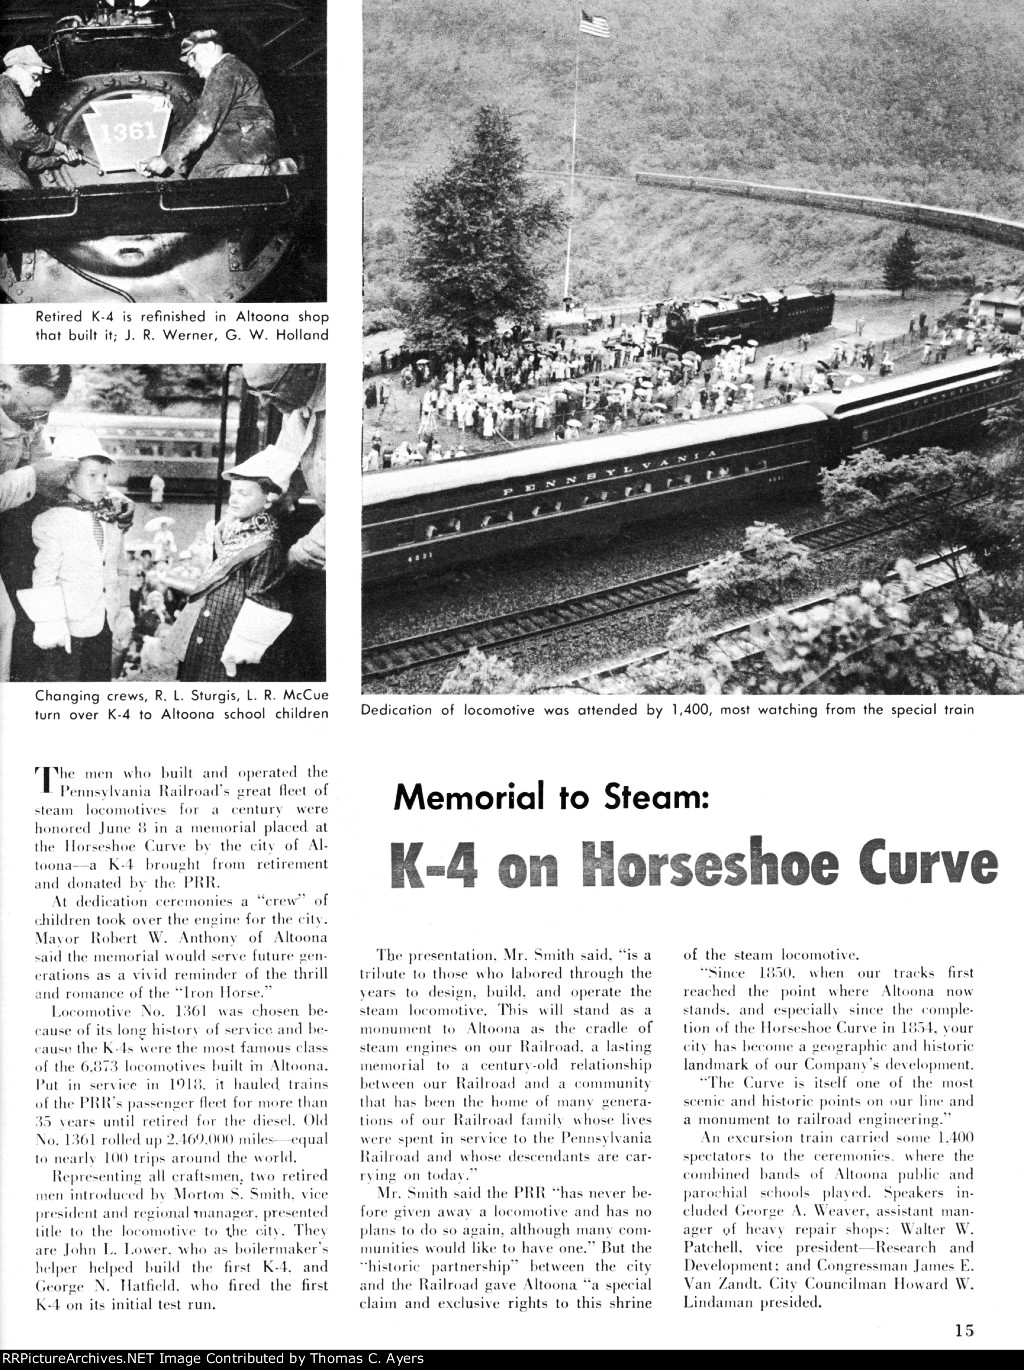 "K-4 On Horseshoe Curve," Page 15, 1957